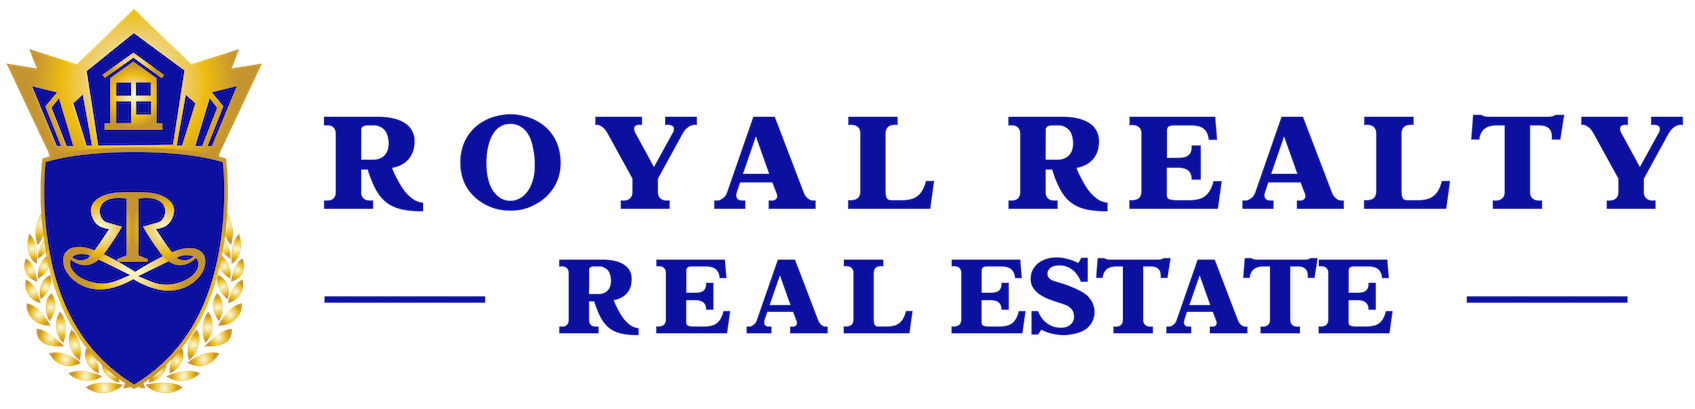 Royal Realty Real Estate